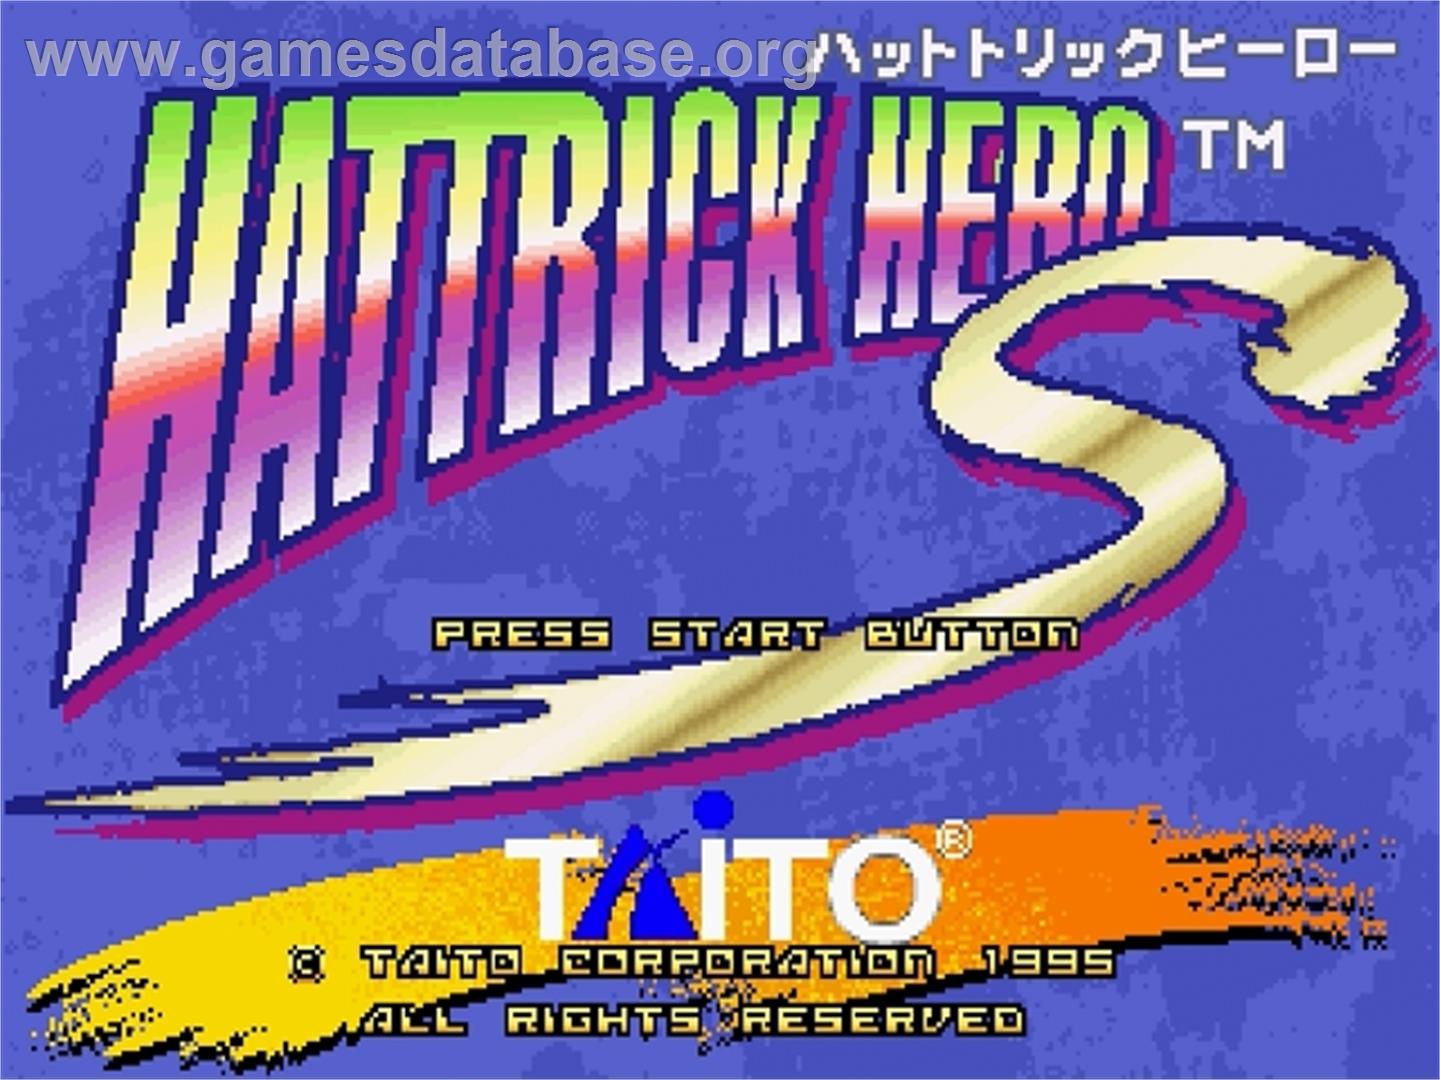 Hat Trick Hero S - Sega Saturn - Artwork - Title Screen